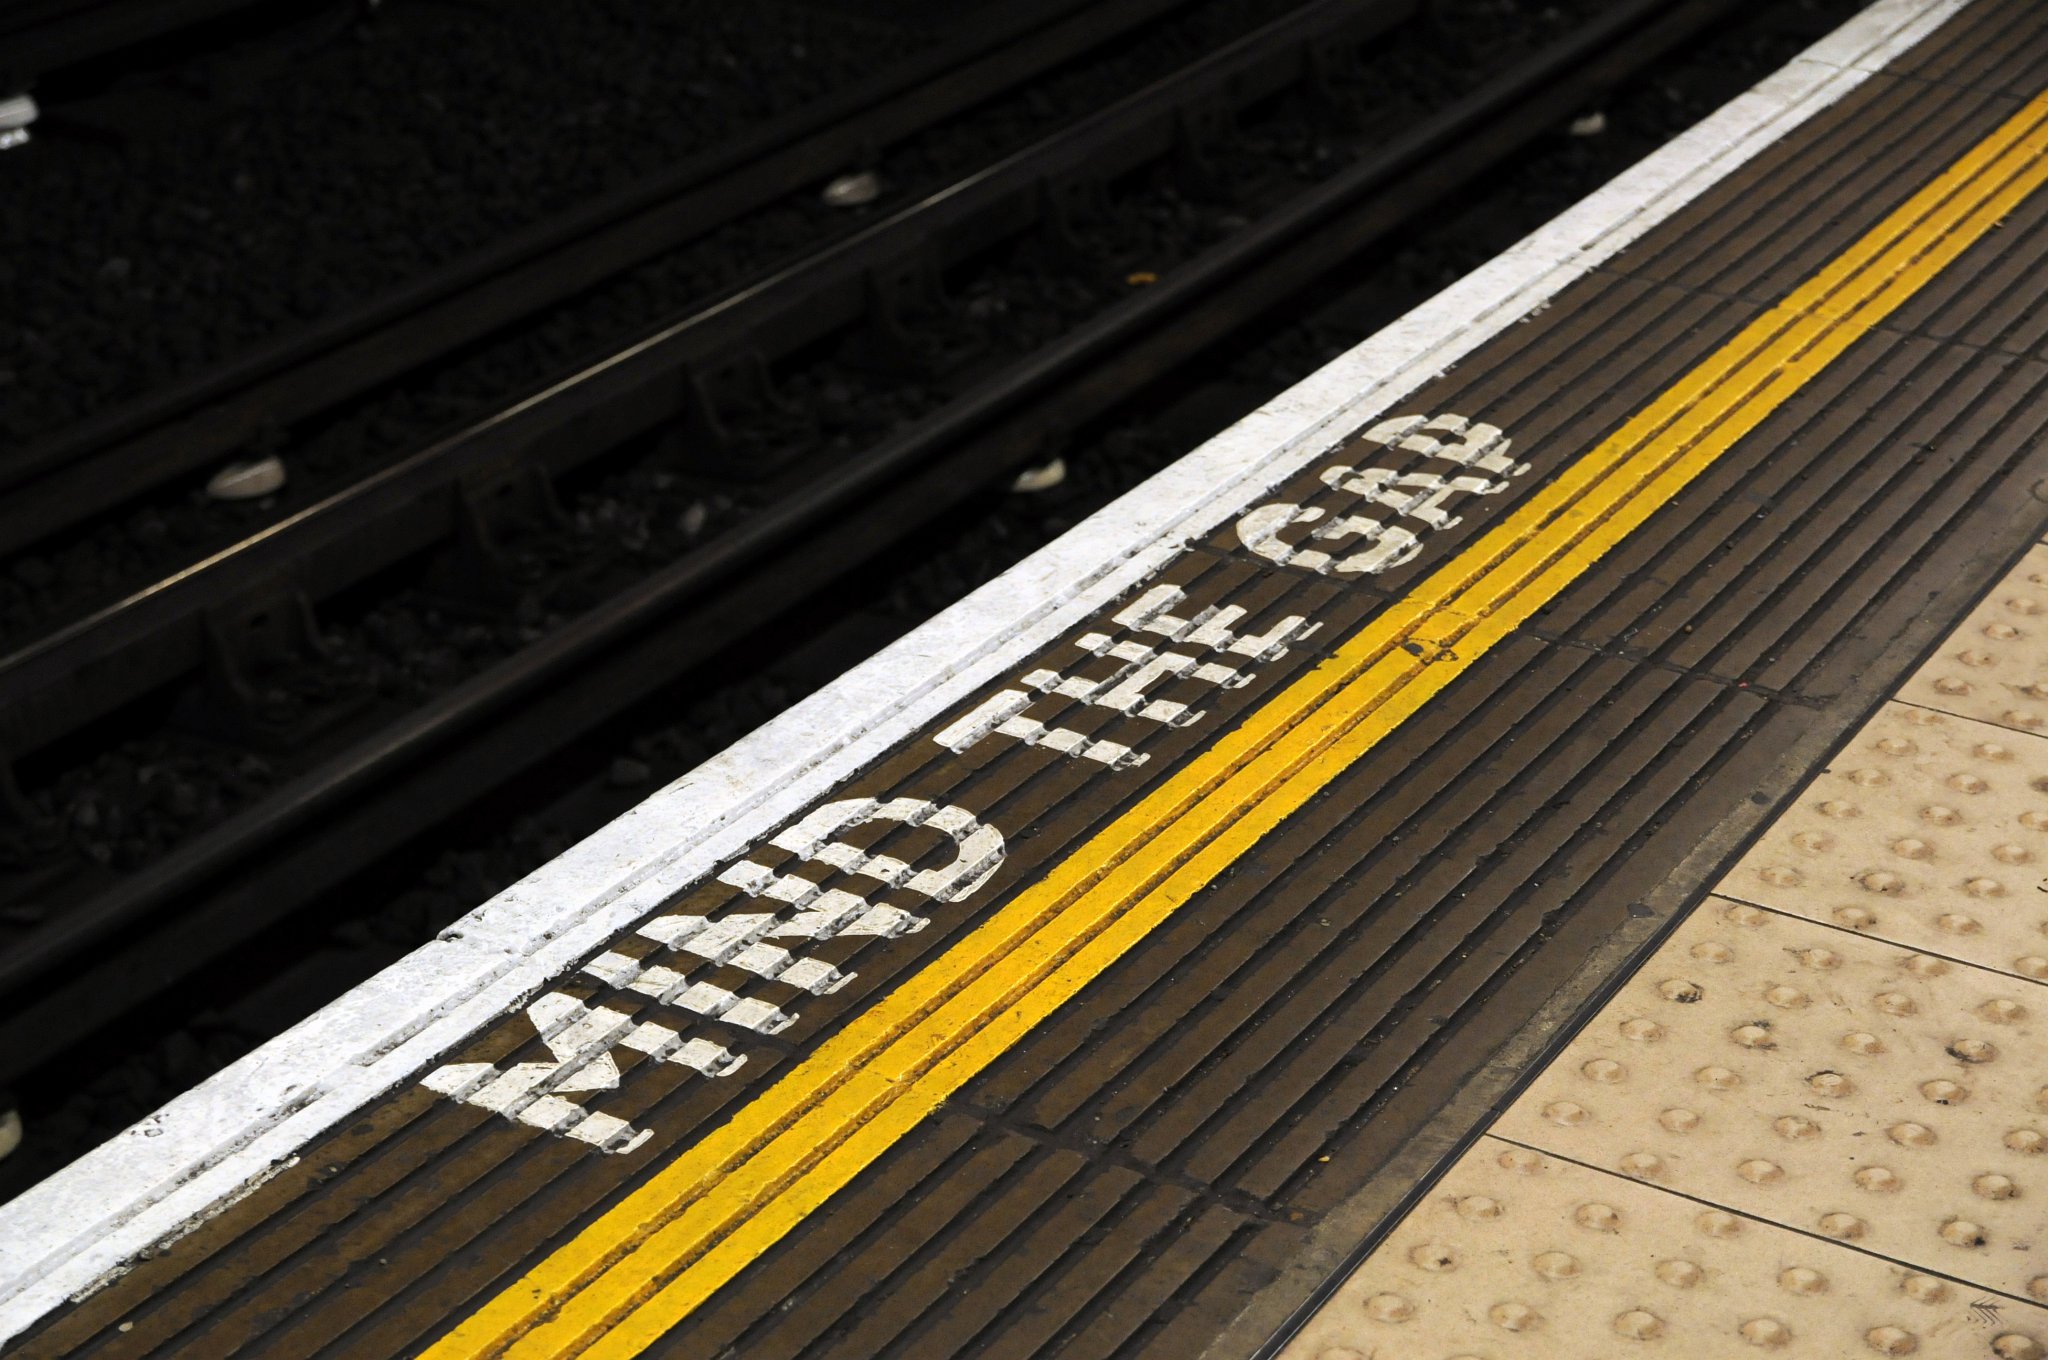 DSC_7826_1.jpg - "Pozor na mezeru" je varování cestujících, aby byli při vystupování a nastupování z vagónů londýnského metra na nástupiště opatrní. tato věta se používá od roku 1969.